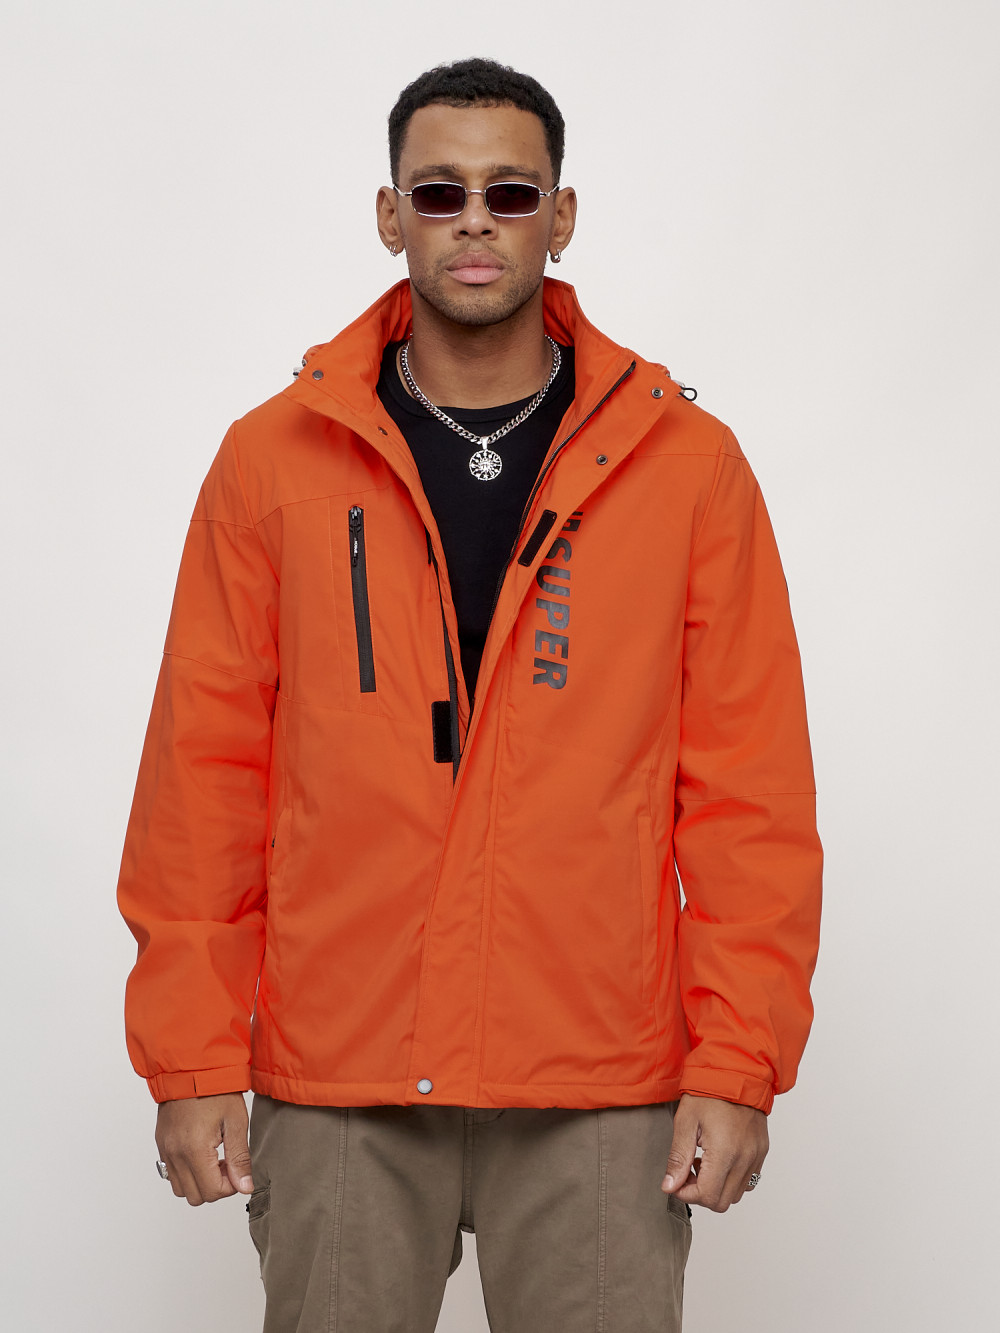 Купить оптом Куртка спортивная мужская весенняя с капюшоном оранжевого цвета 88026O в Екатеринбурге